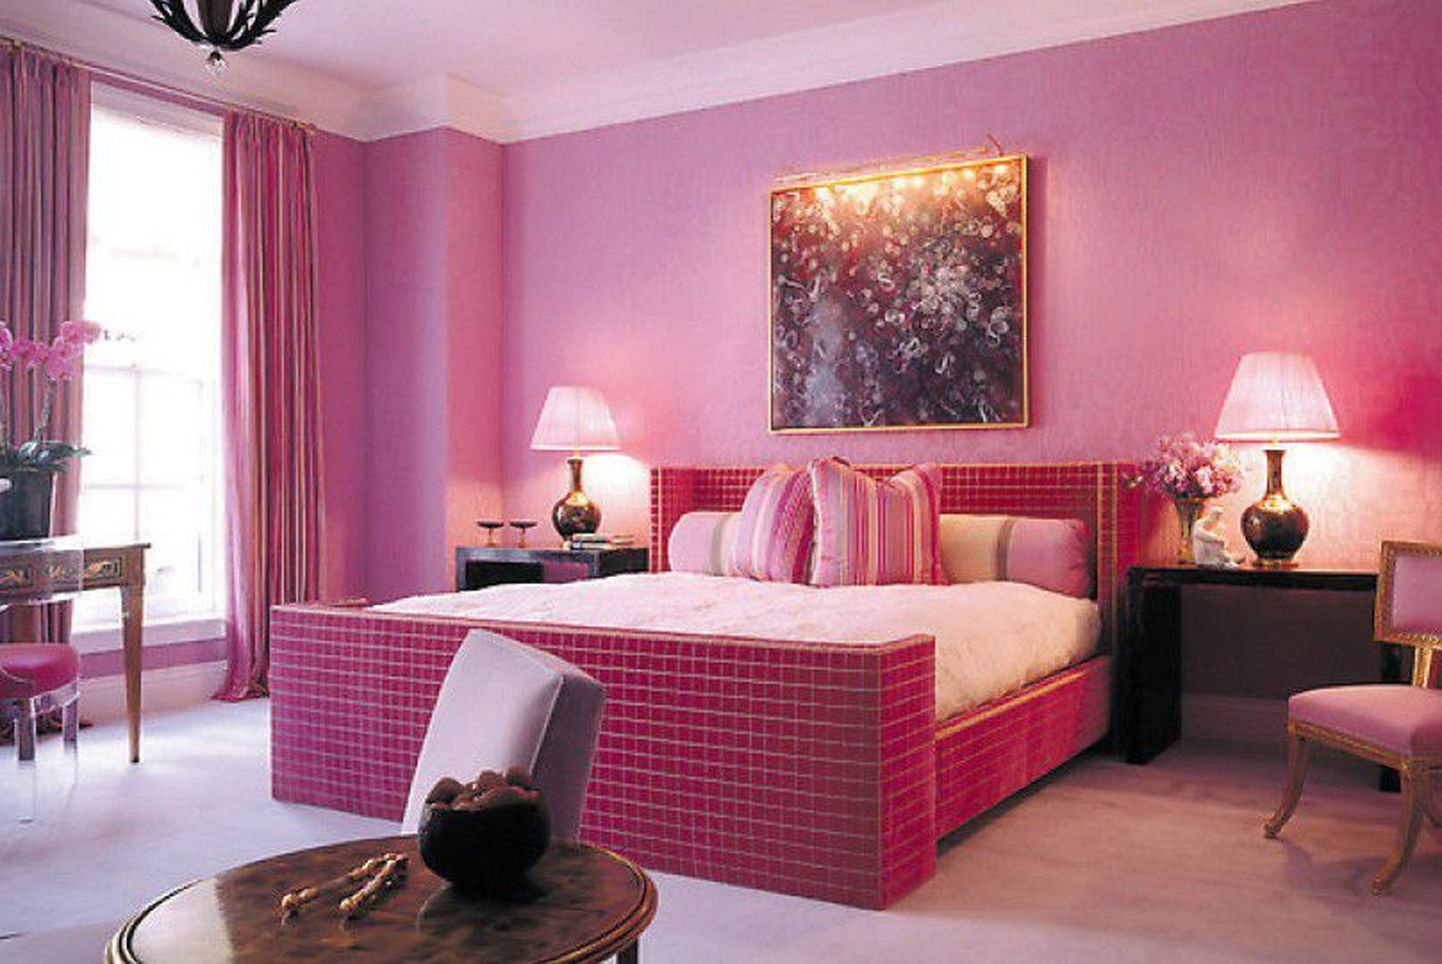 Розовая комната. Иллюстративный снимок.